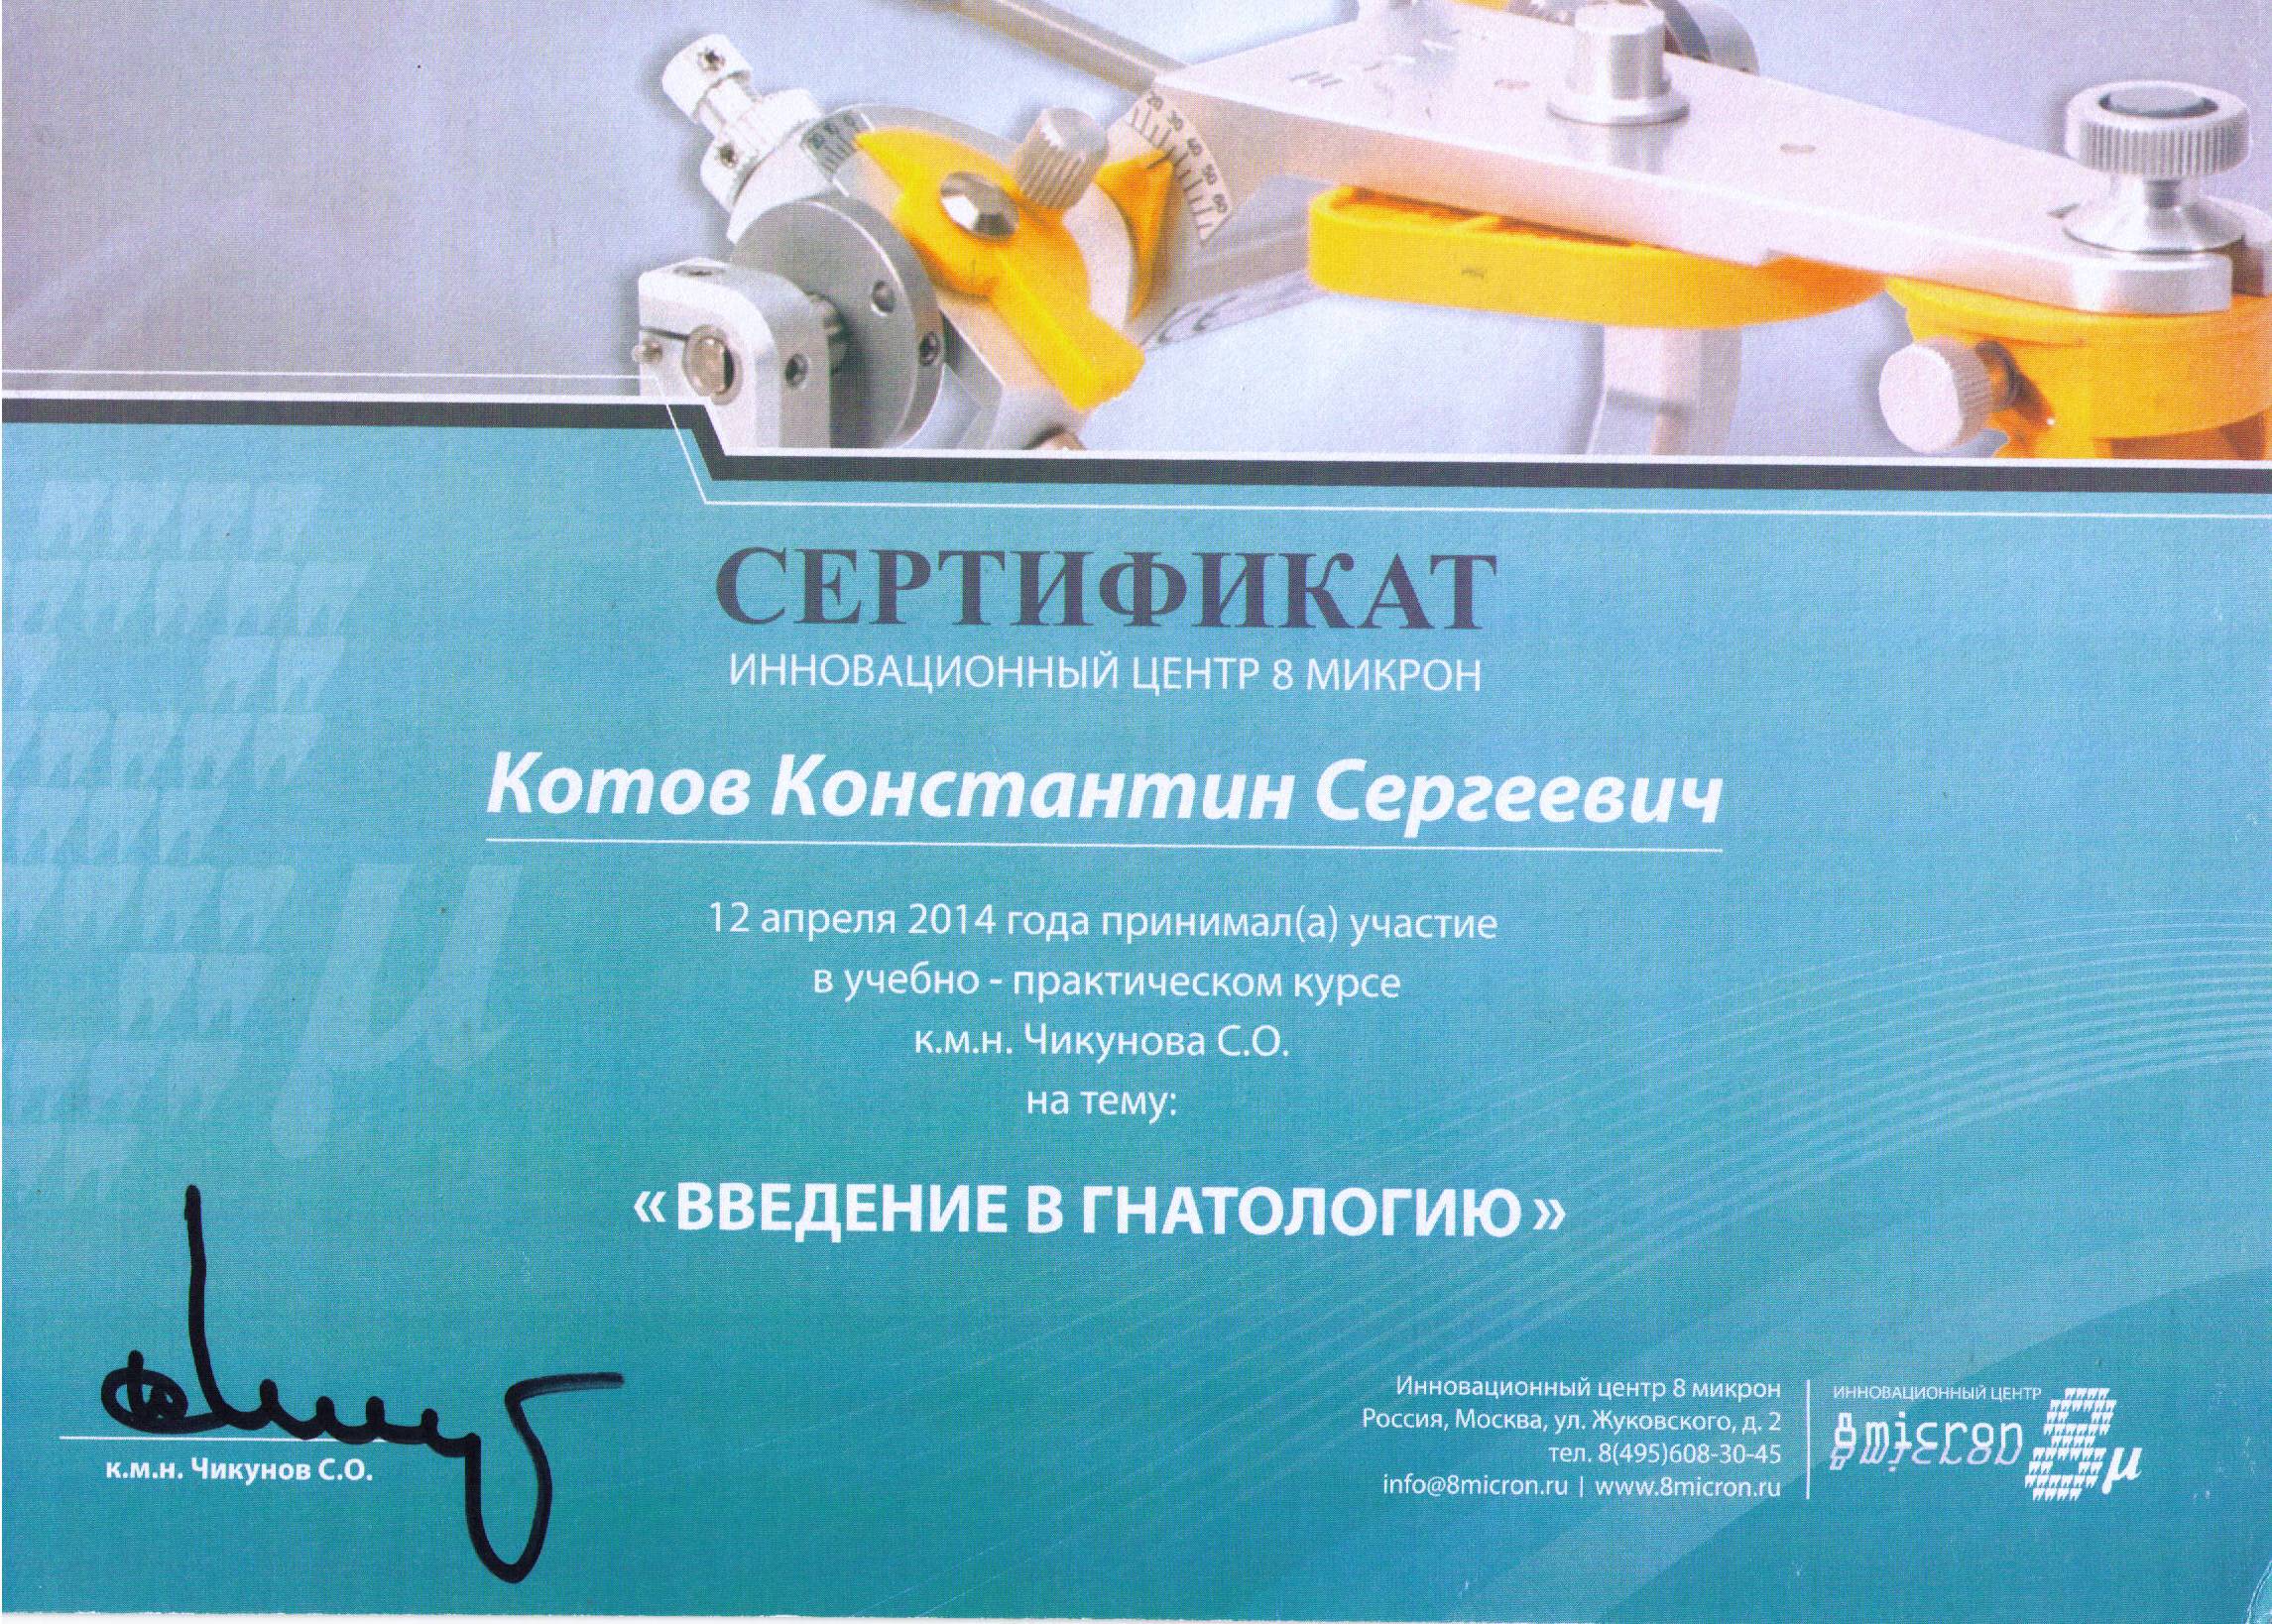 2014-04-12_Сертификат_Гнатология